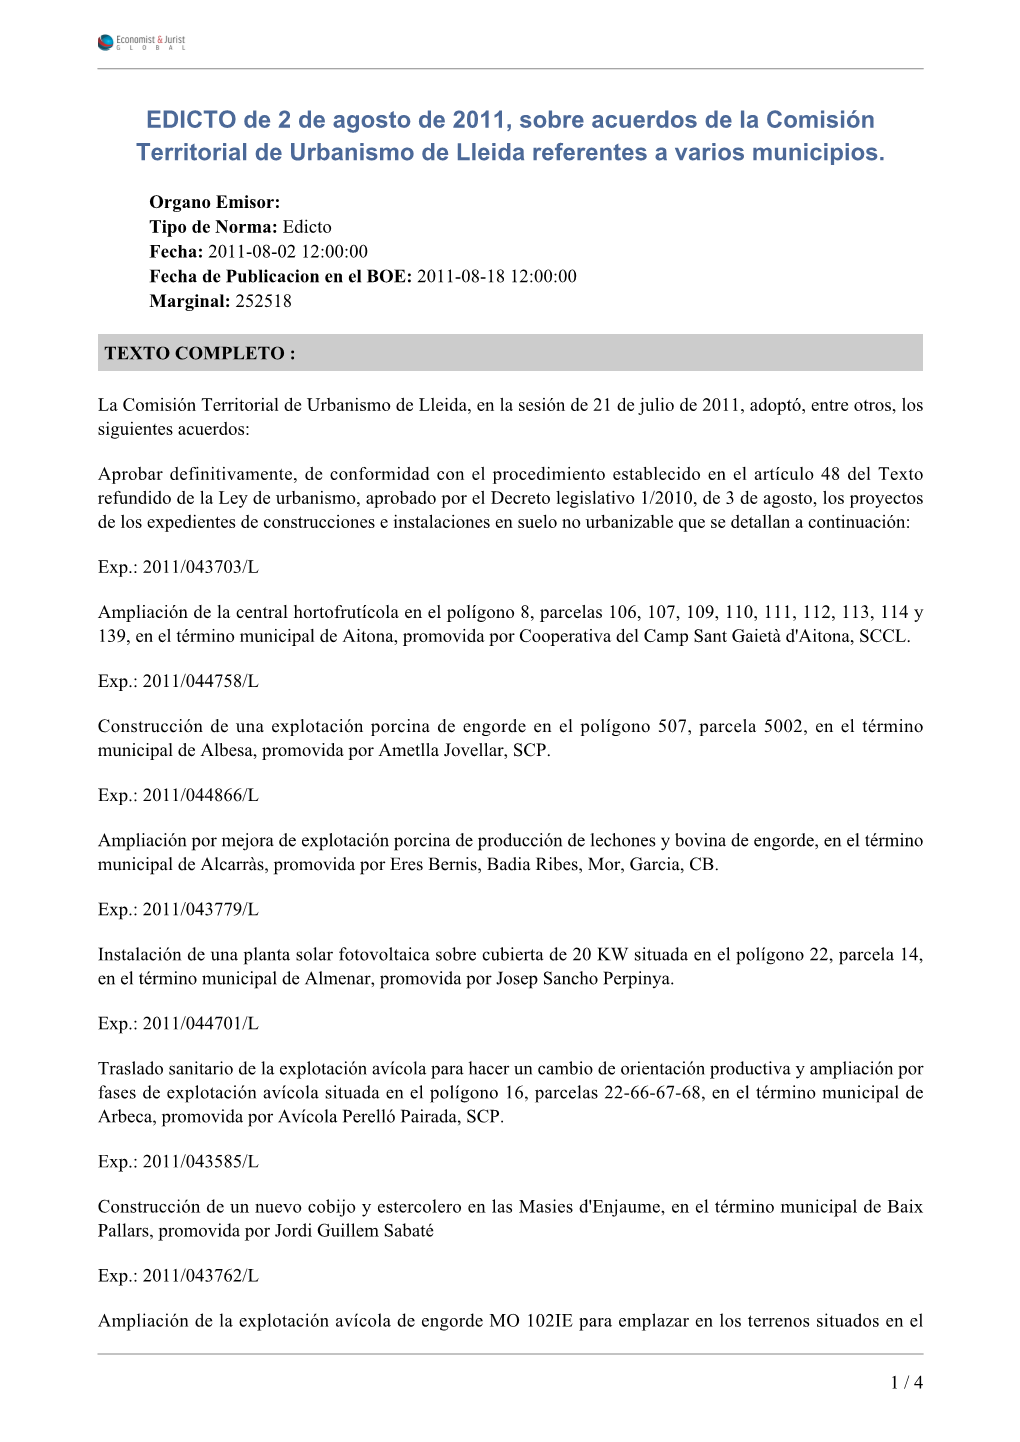 EDICTO De 2 De Agosto De 2011, Sobre Acuerdos De La Comisión Territorial De Urbanismo De Lleida Referentes a Varios Municipios